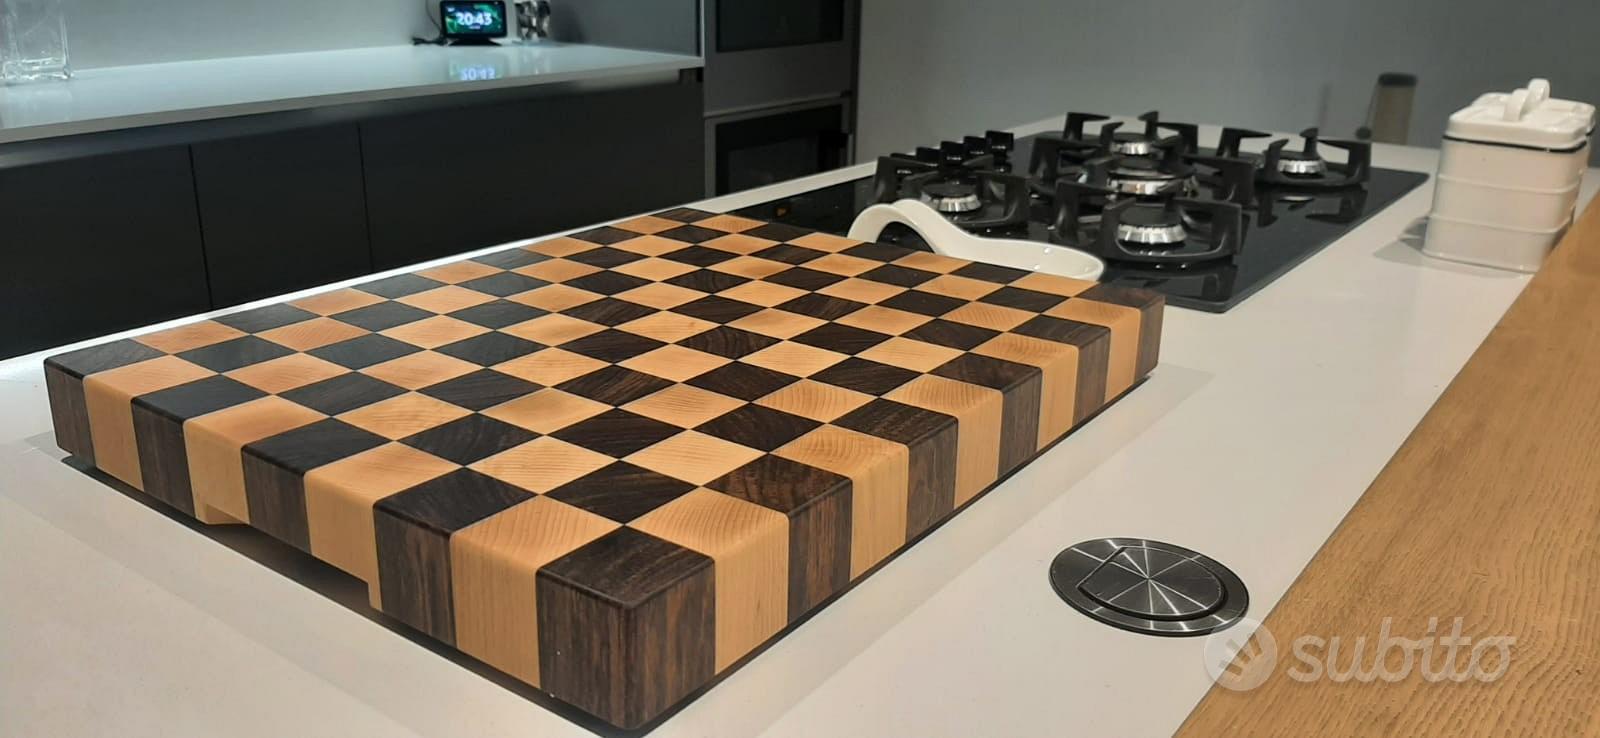 Taglieri a scacchi - Arredamento e Casalinghi In vendita a Bergamo